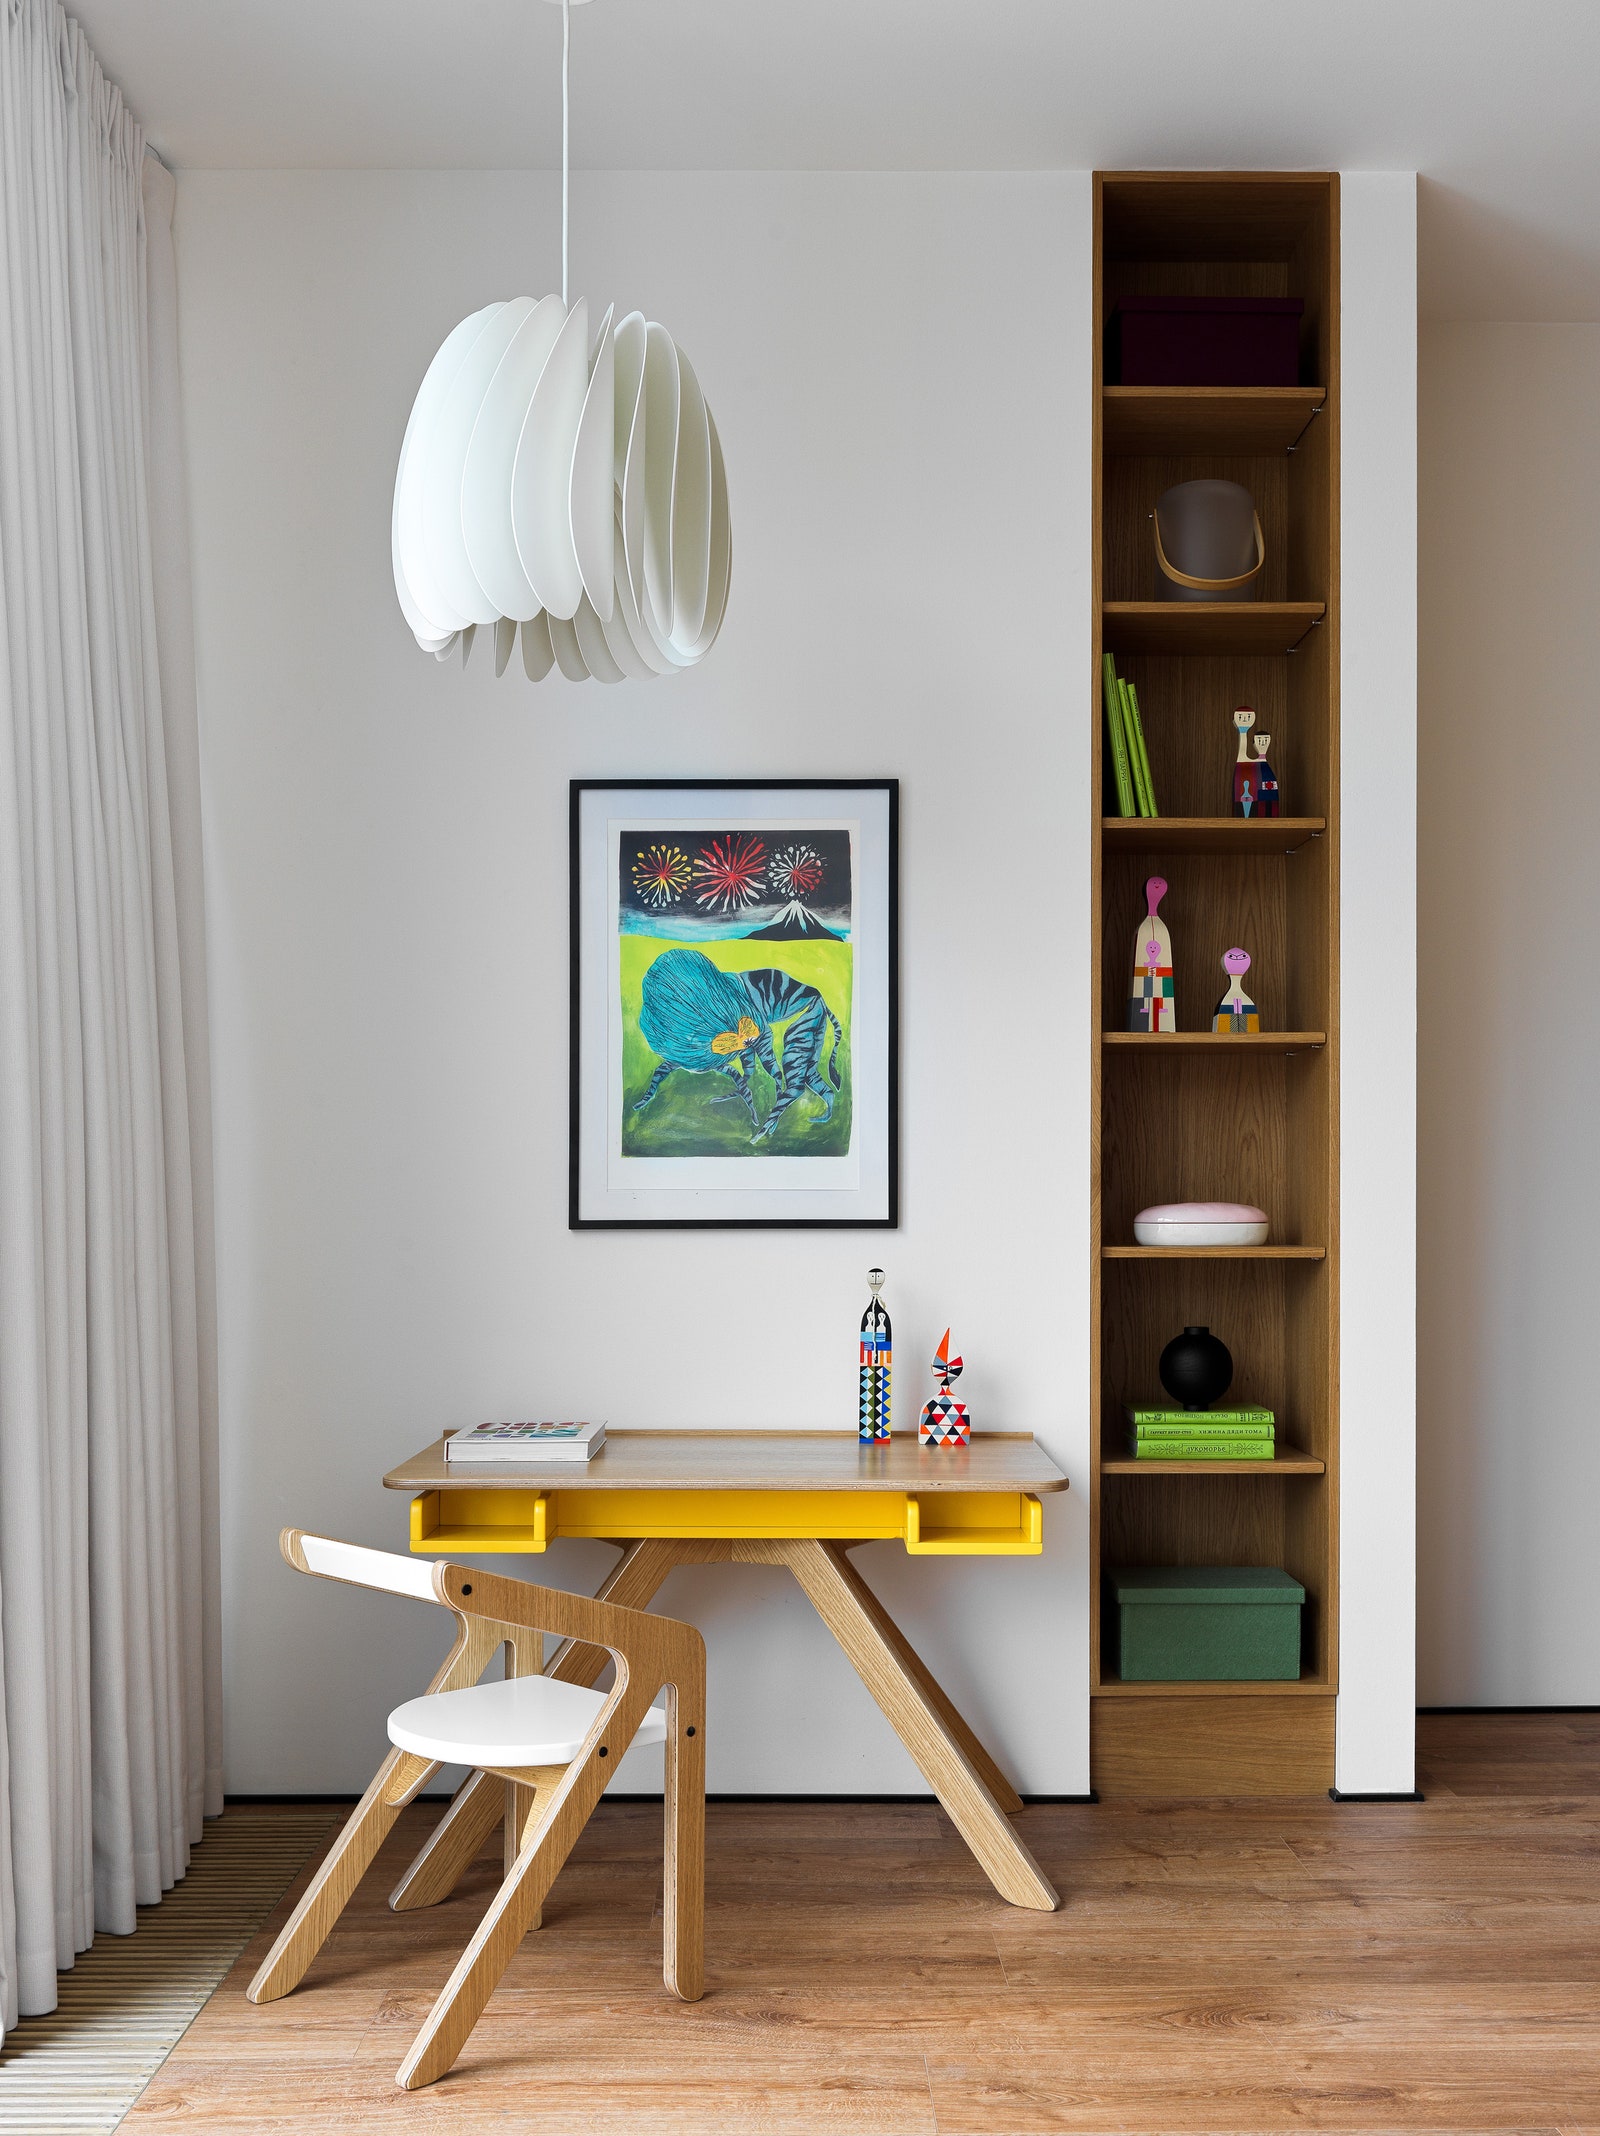 Квартира в Тюмени 200 м². Зона arts craftsзанятий. Стол и стул Moonk деревянные фигурки Vitra подвесной светильник Ikea...